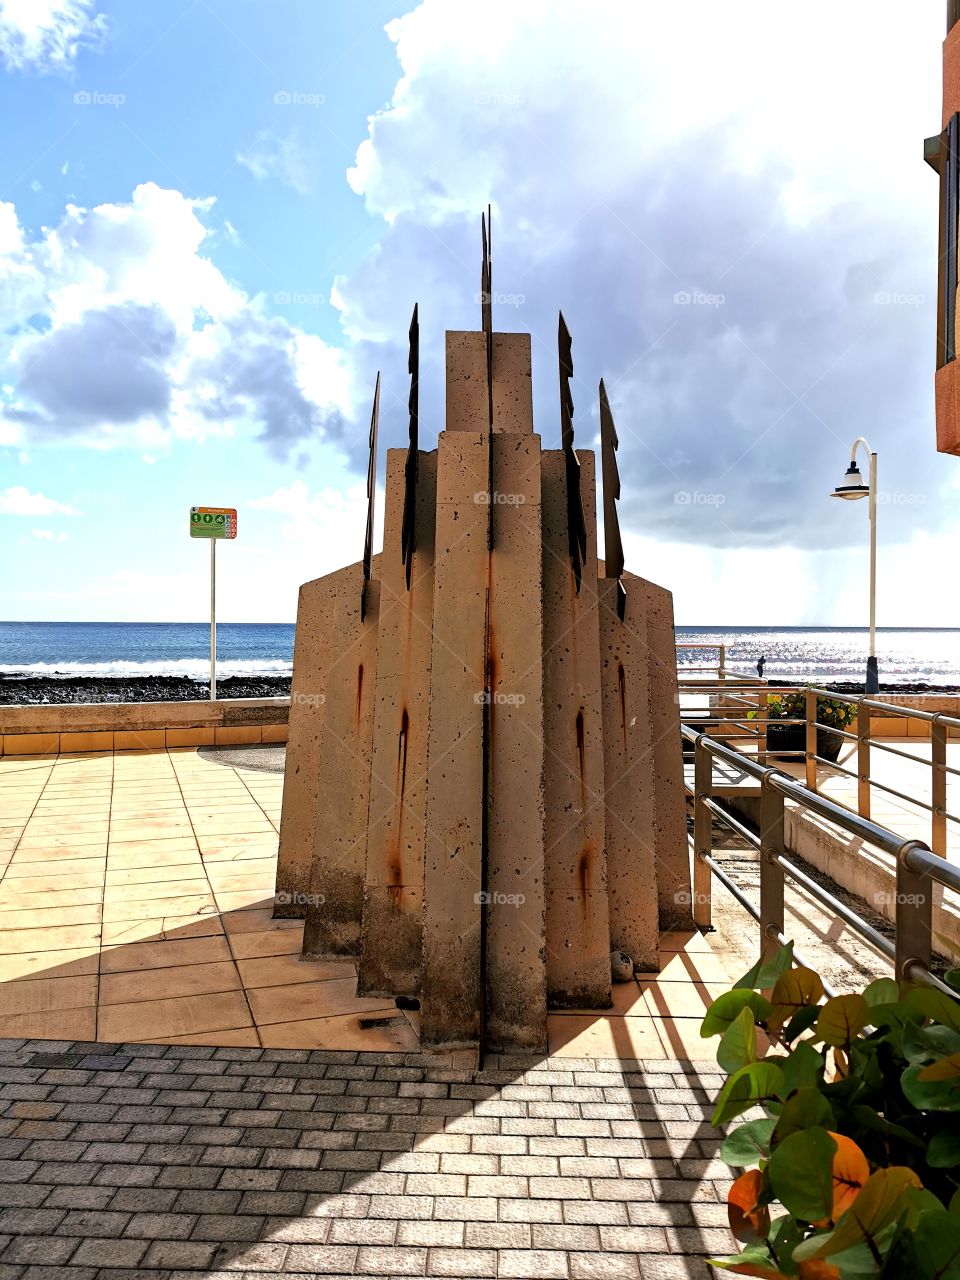 Escultura situada cerca del mar.